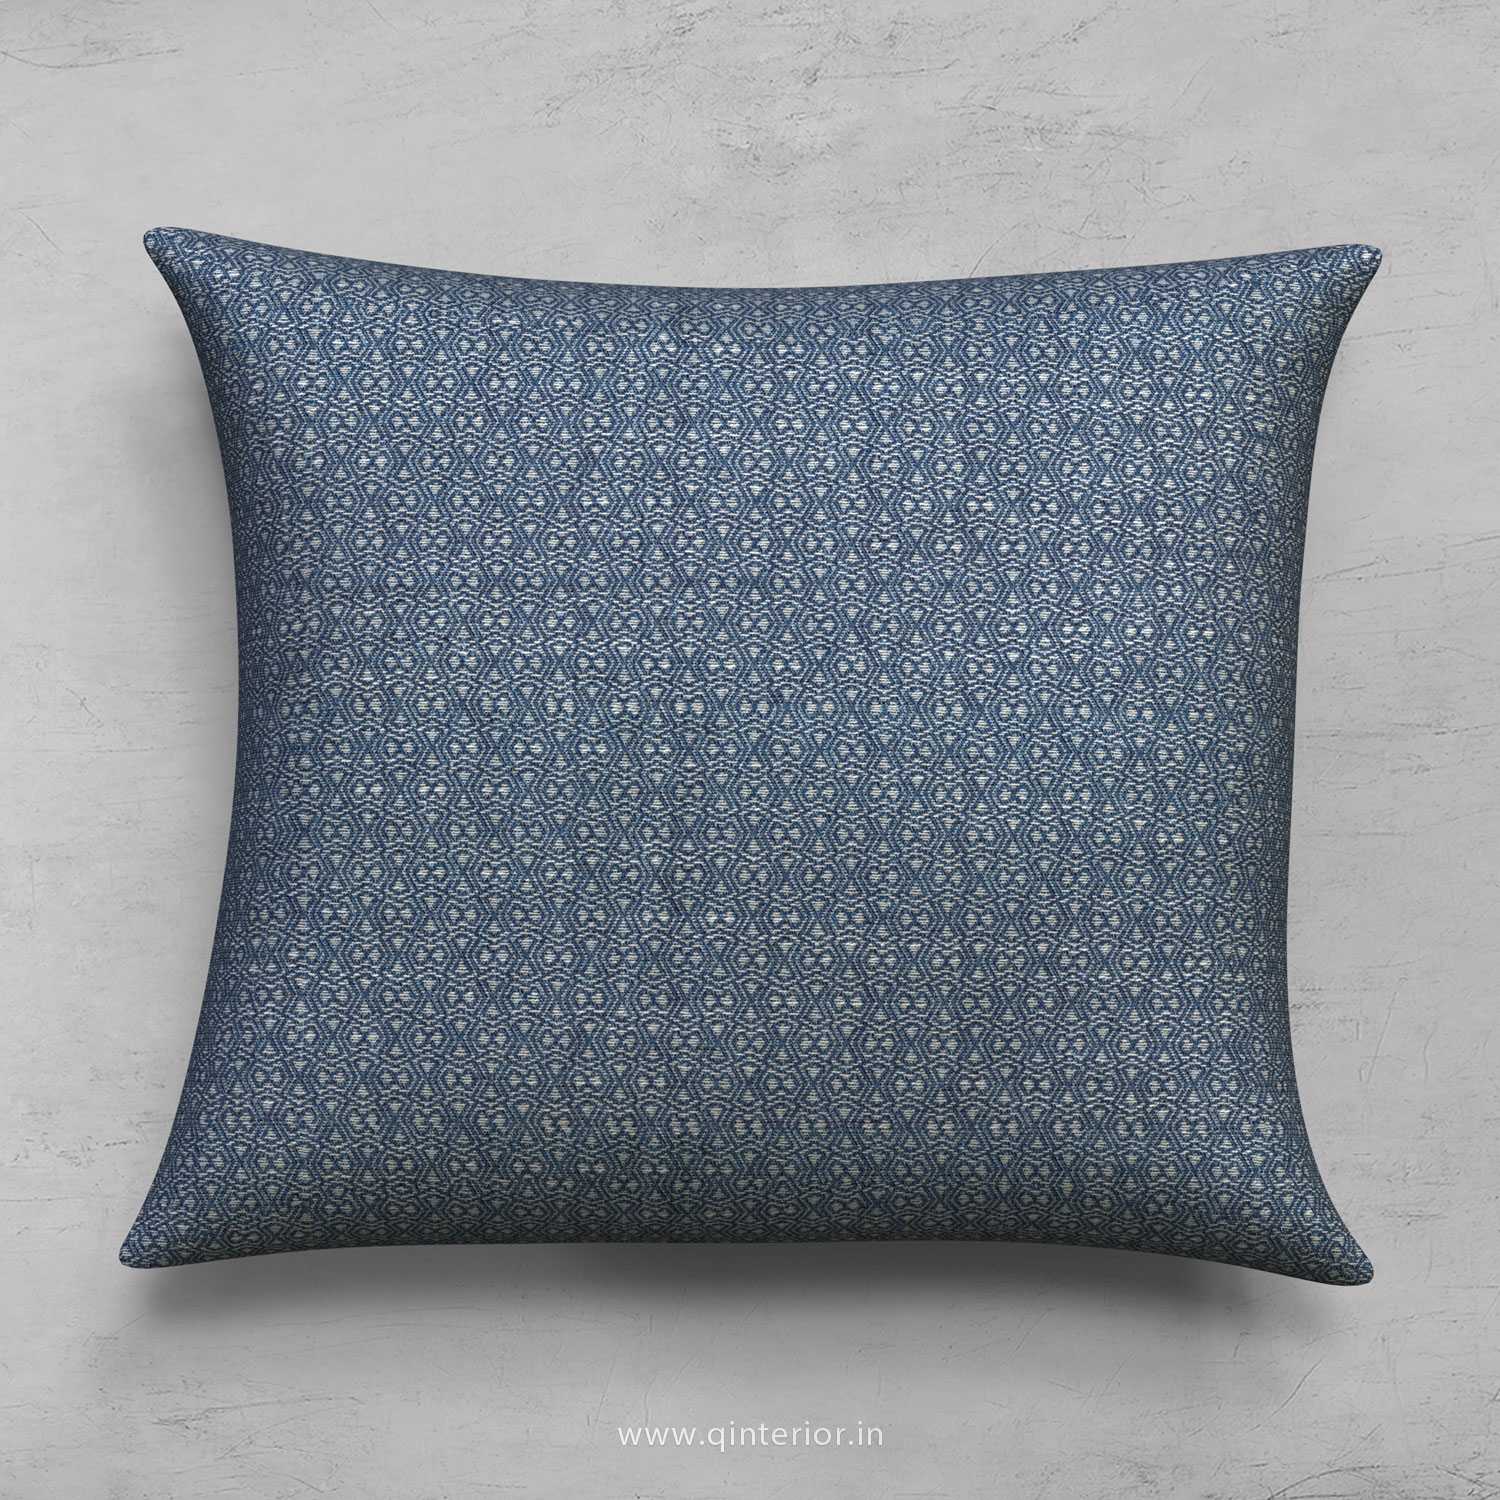 Cushion With Cushion Cover in Jacquard- CUS001 JQ28